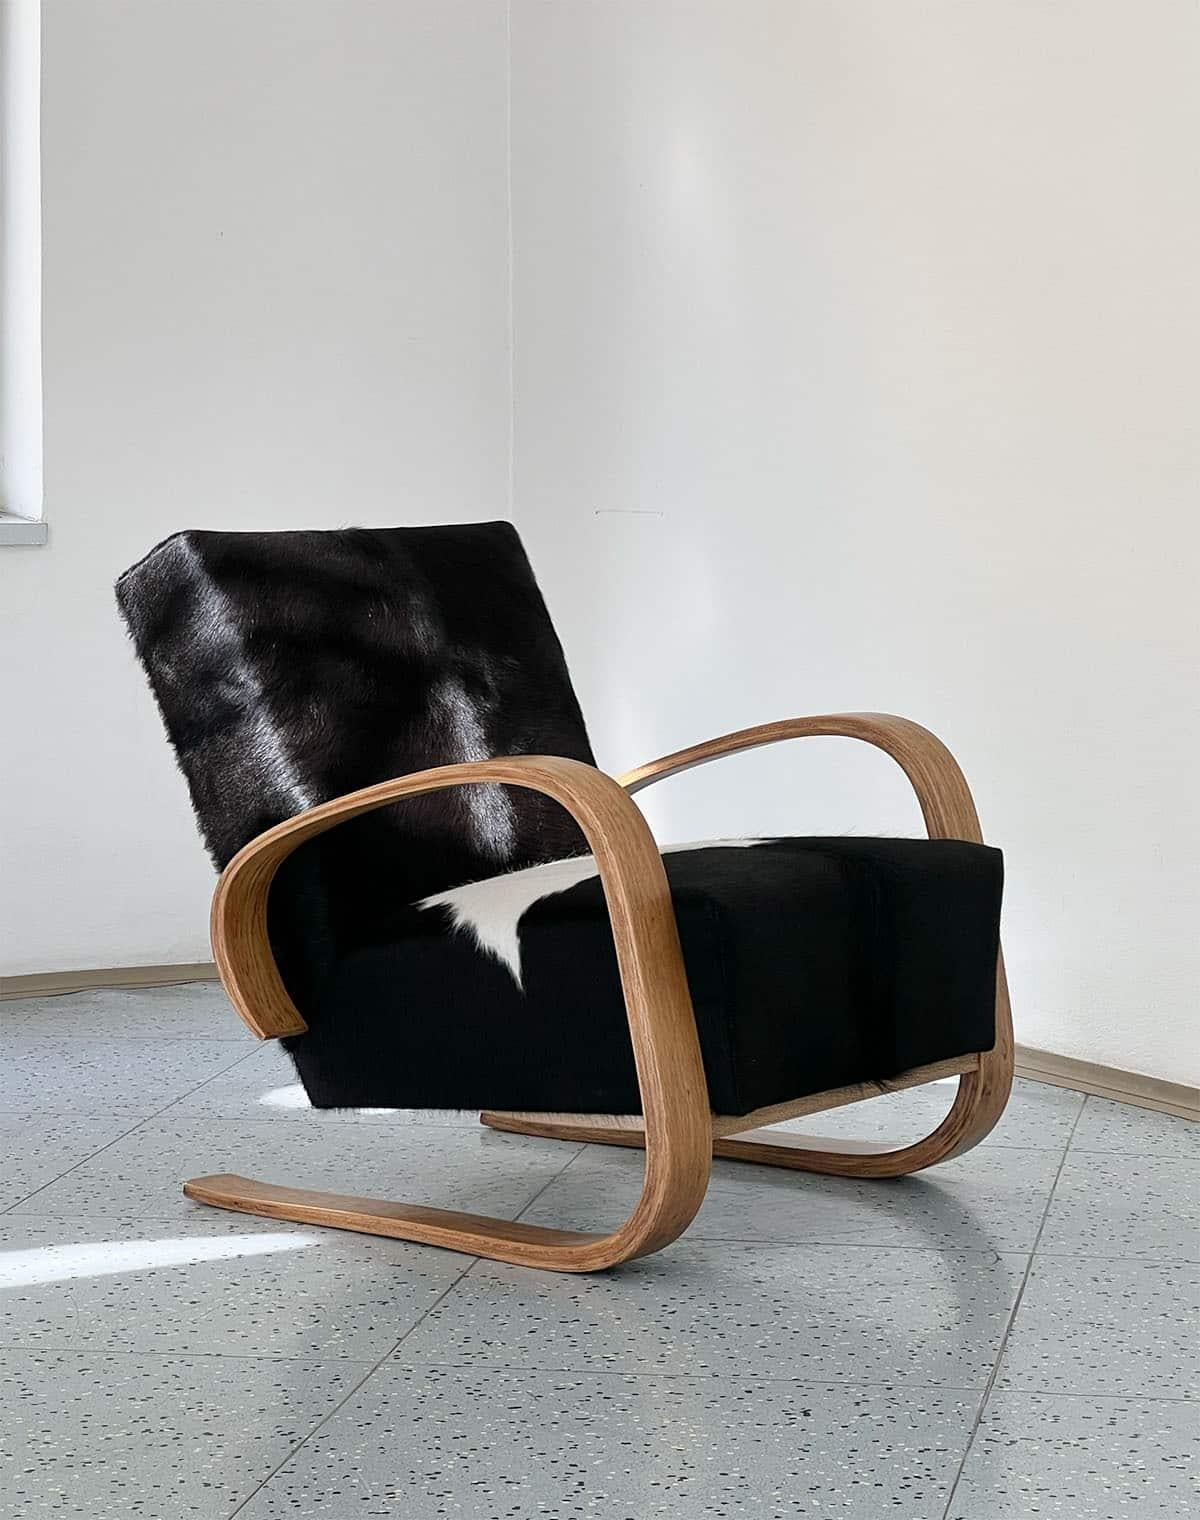 Chaise longue cantilever conçue par Miroslav Navrátil pour Spojené UP závody en Tchécoslovaquie, années 1950.

Cette chaise longue a été conçue par Miroslav Navratil et est retapissée dans cette magnifique peau de vache. Les couleurs de la